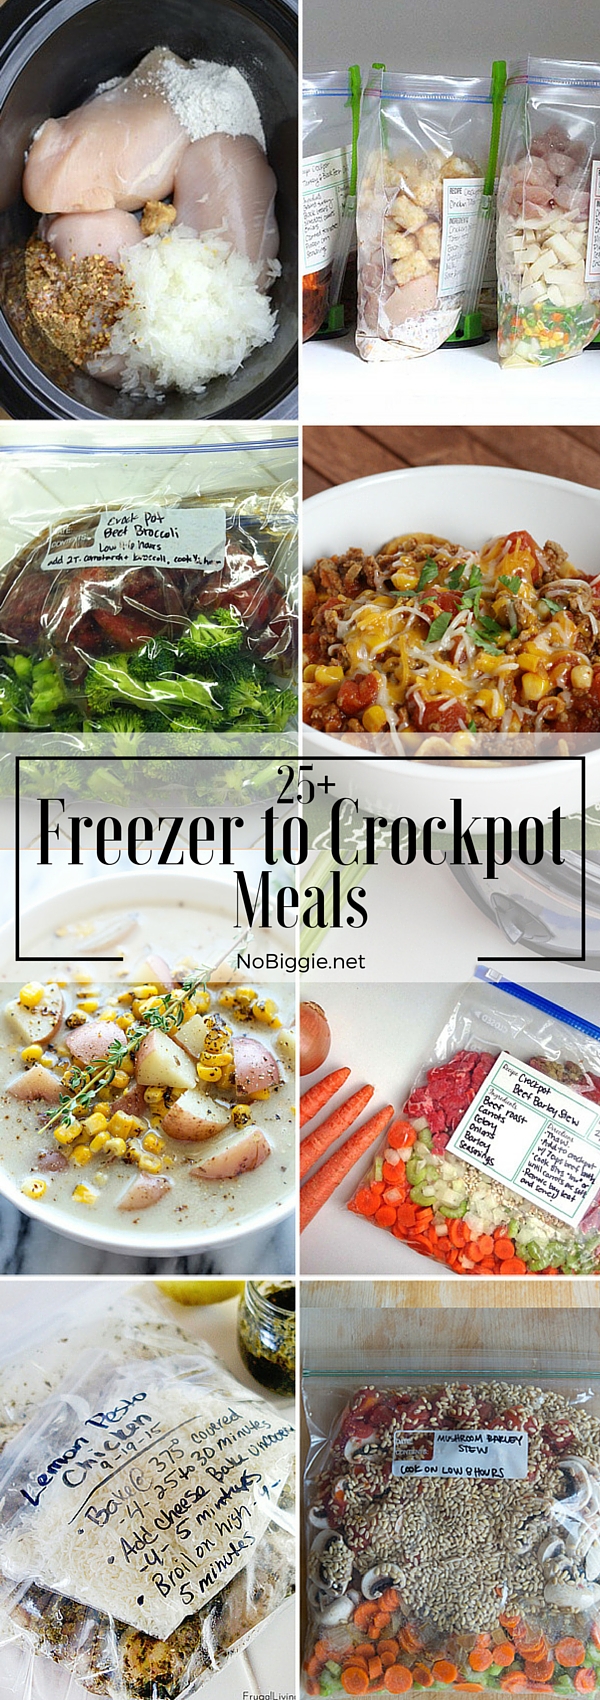 25+ Freezer to Crockpot Meals | NoBiggie.net